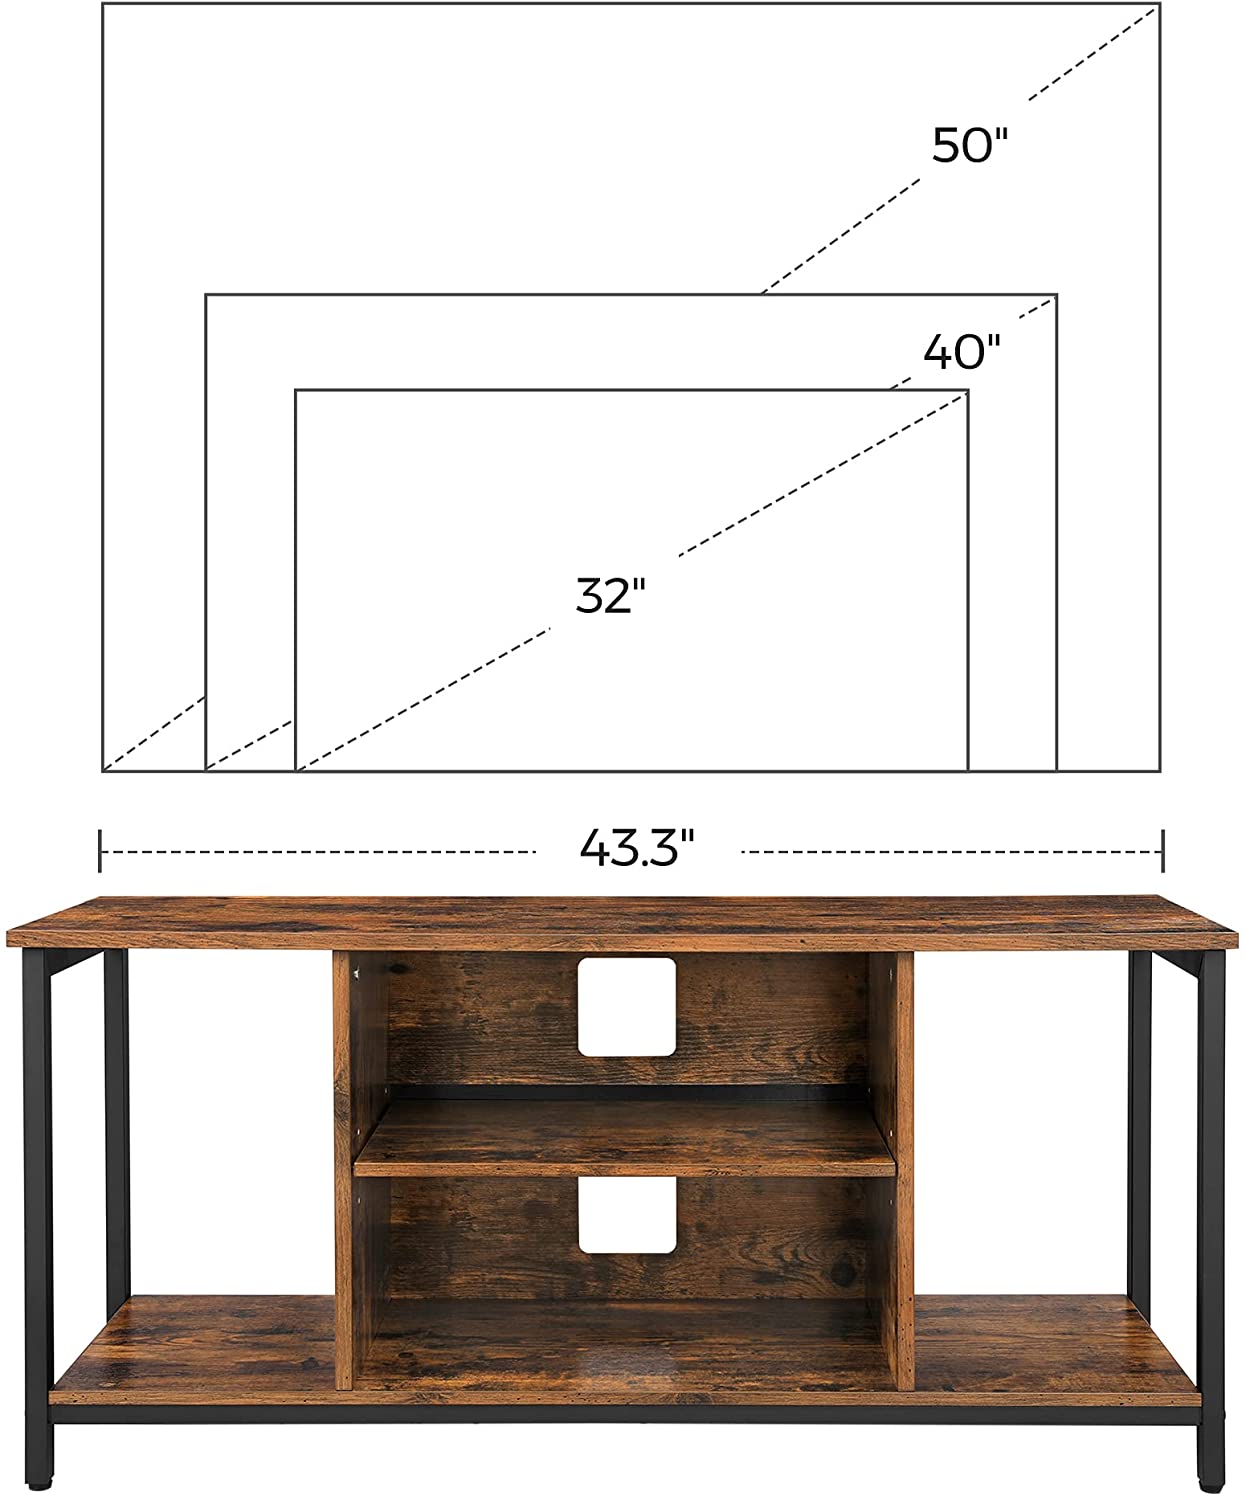 კლასიკური რუსტიკული ავეჯი ხის ლითონის ჩარჩოს სატელევიზიო მაგიდა 65 ინჩამდე ტელევიზორისთვის მისაღები ოთახისთვის სამ ფენიანი საცავებით